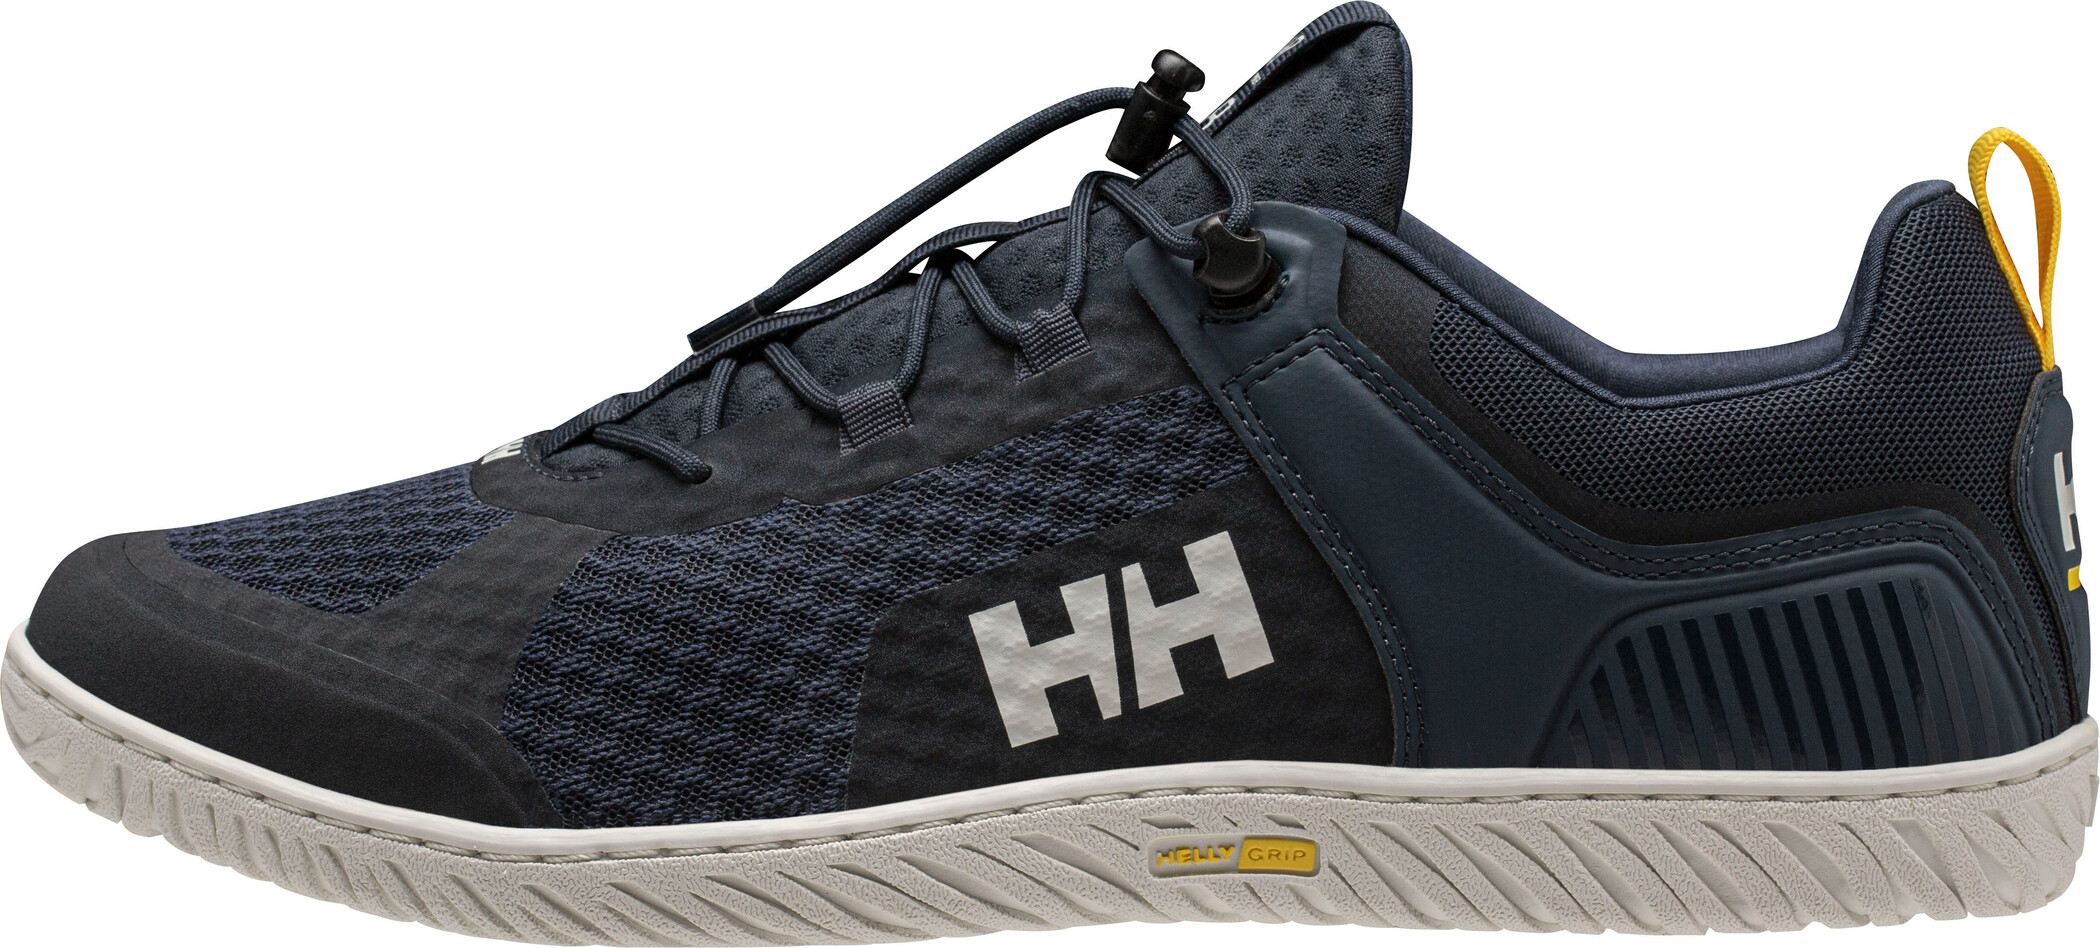 Helly Hansen HP Foil V2 Schuhe Herren blau